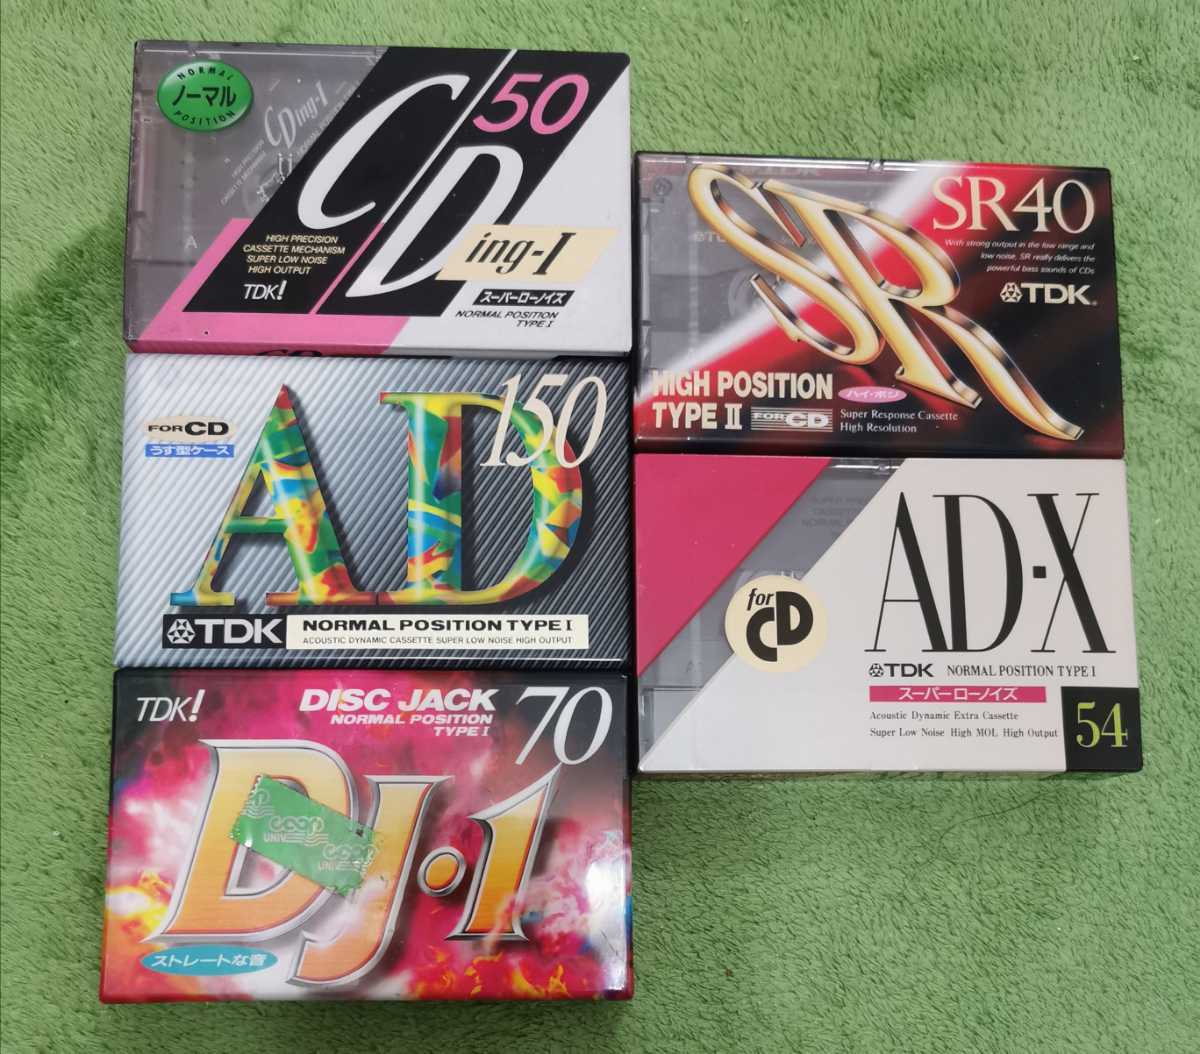 TDK 初代CDING1ノーマルポジションカセットテープ3pack×6